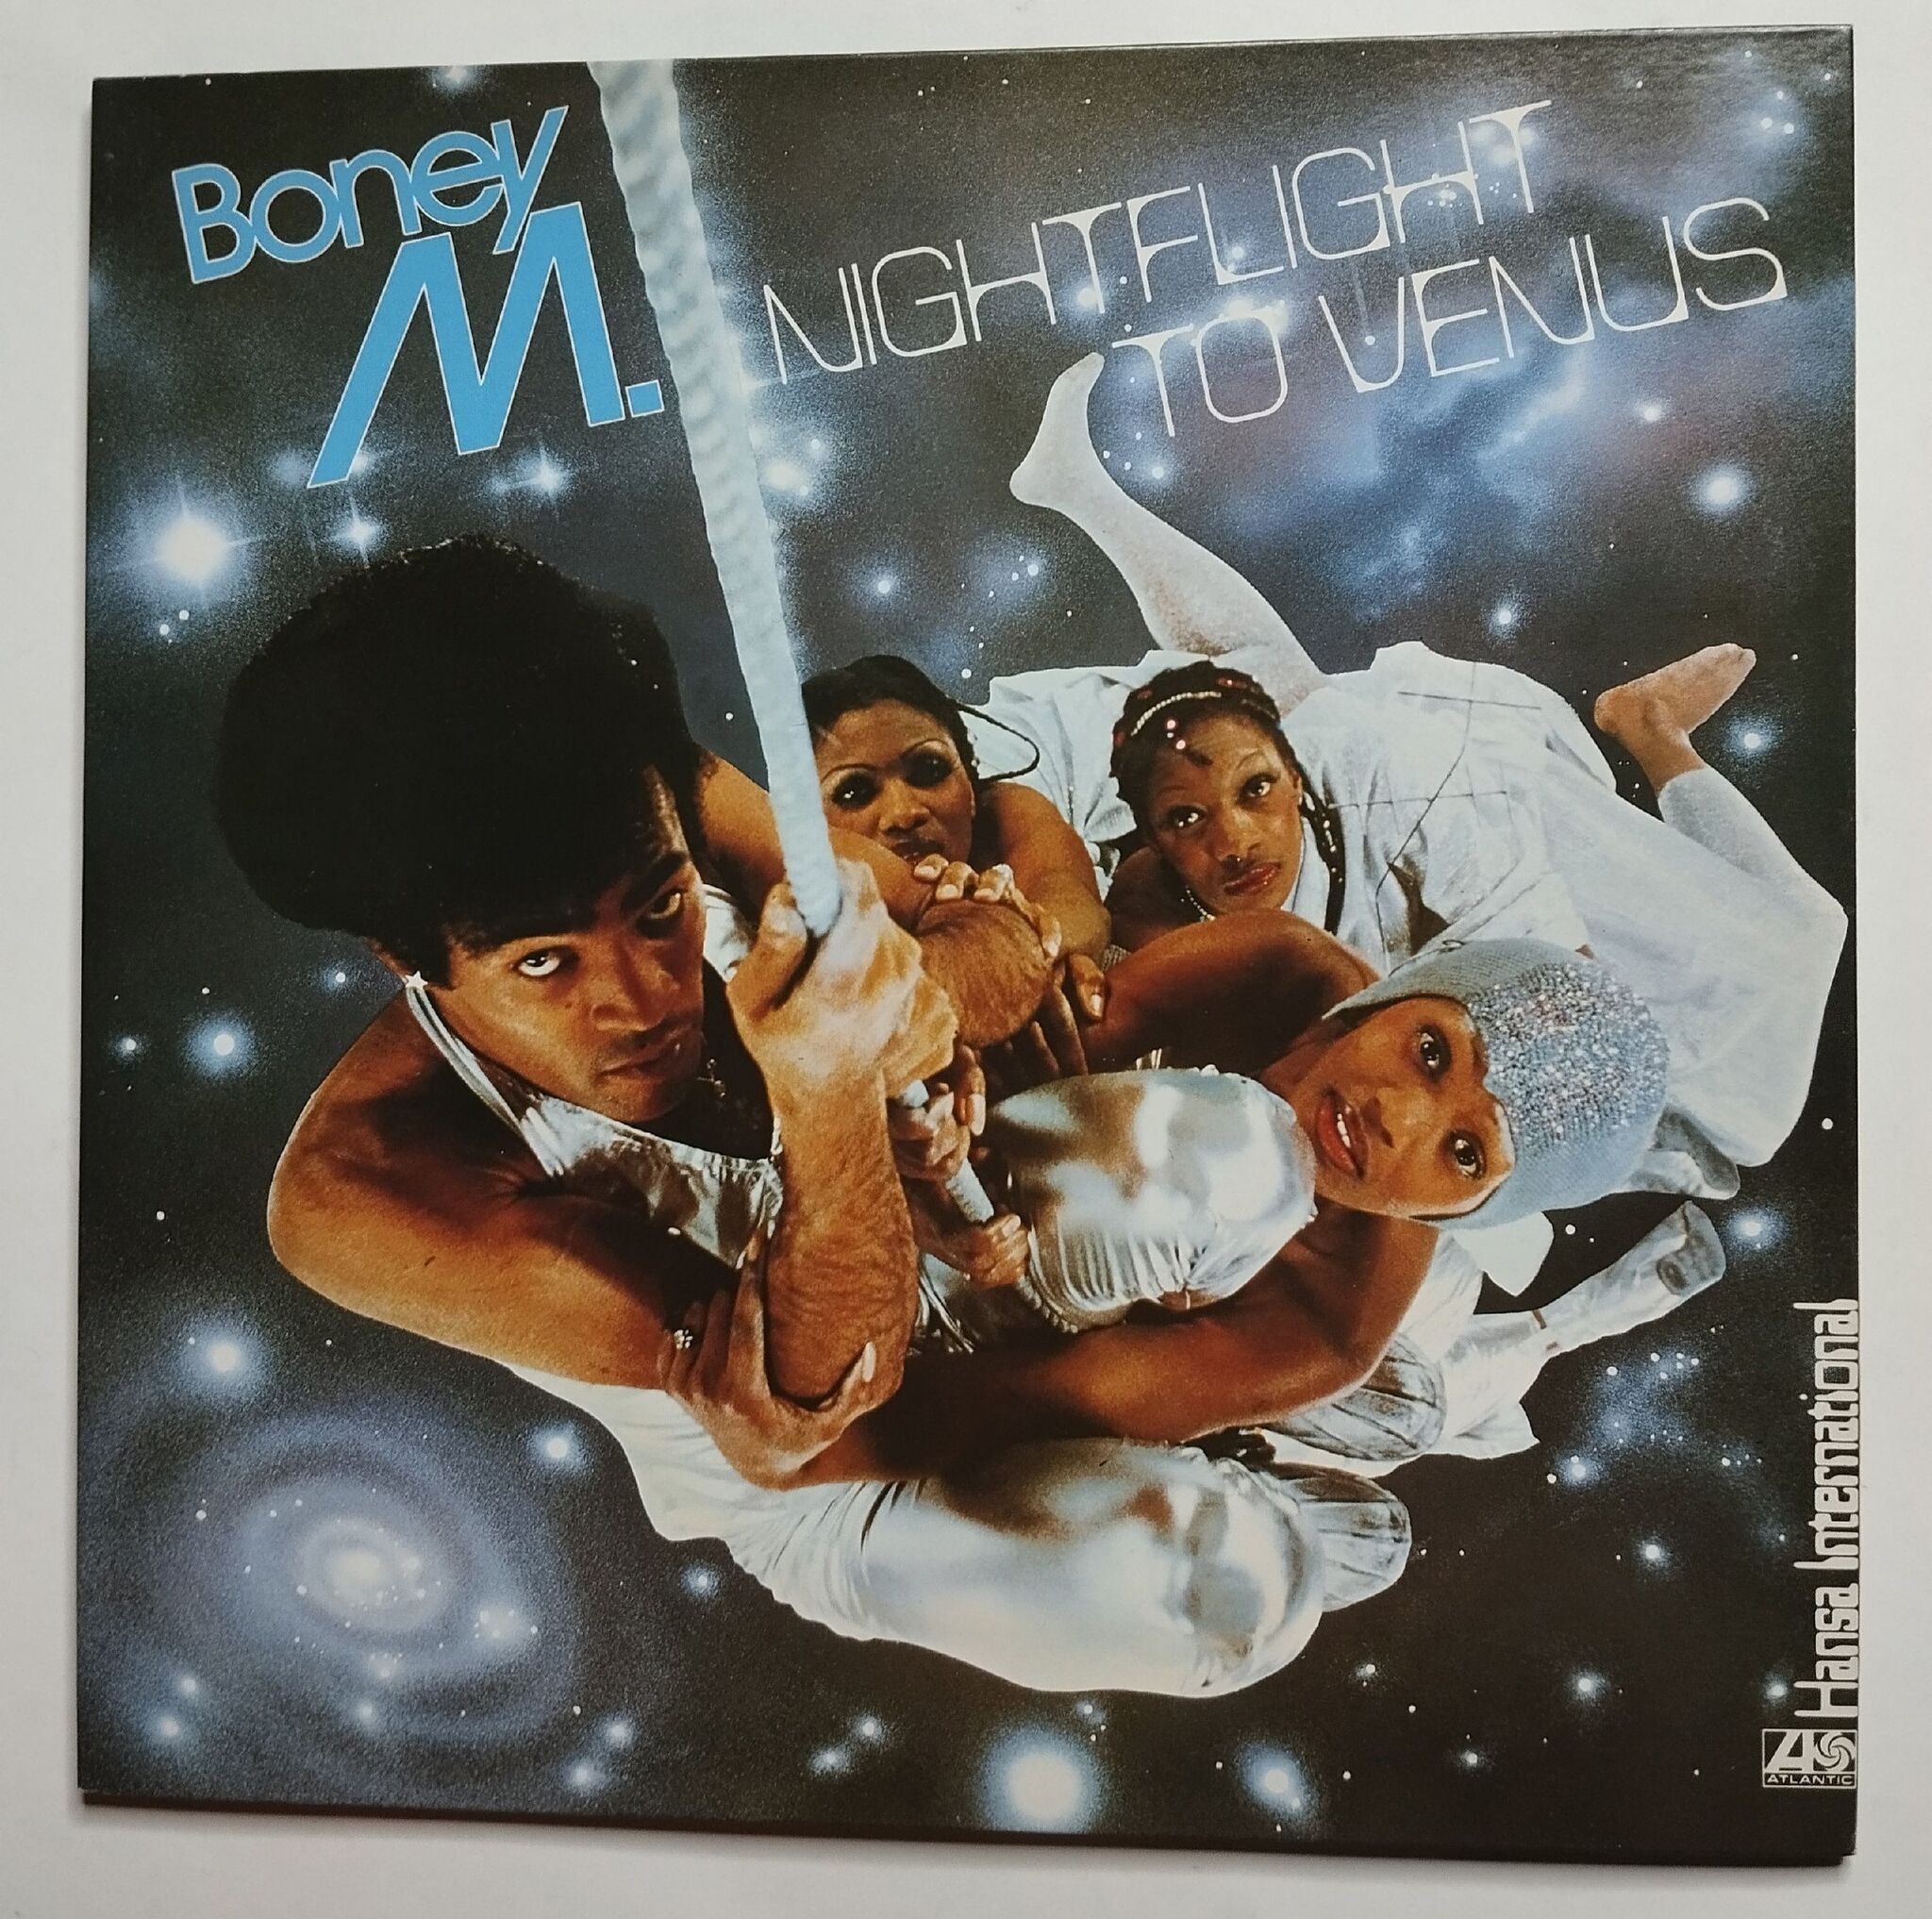 Группа Boney m. 1978. 1978 - Nightflight to Venus. Boney m Nightflight to Venus 1978. Бони м 1978. Boney m nightflight